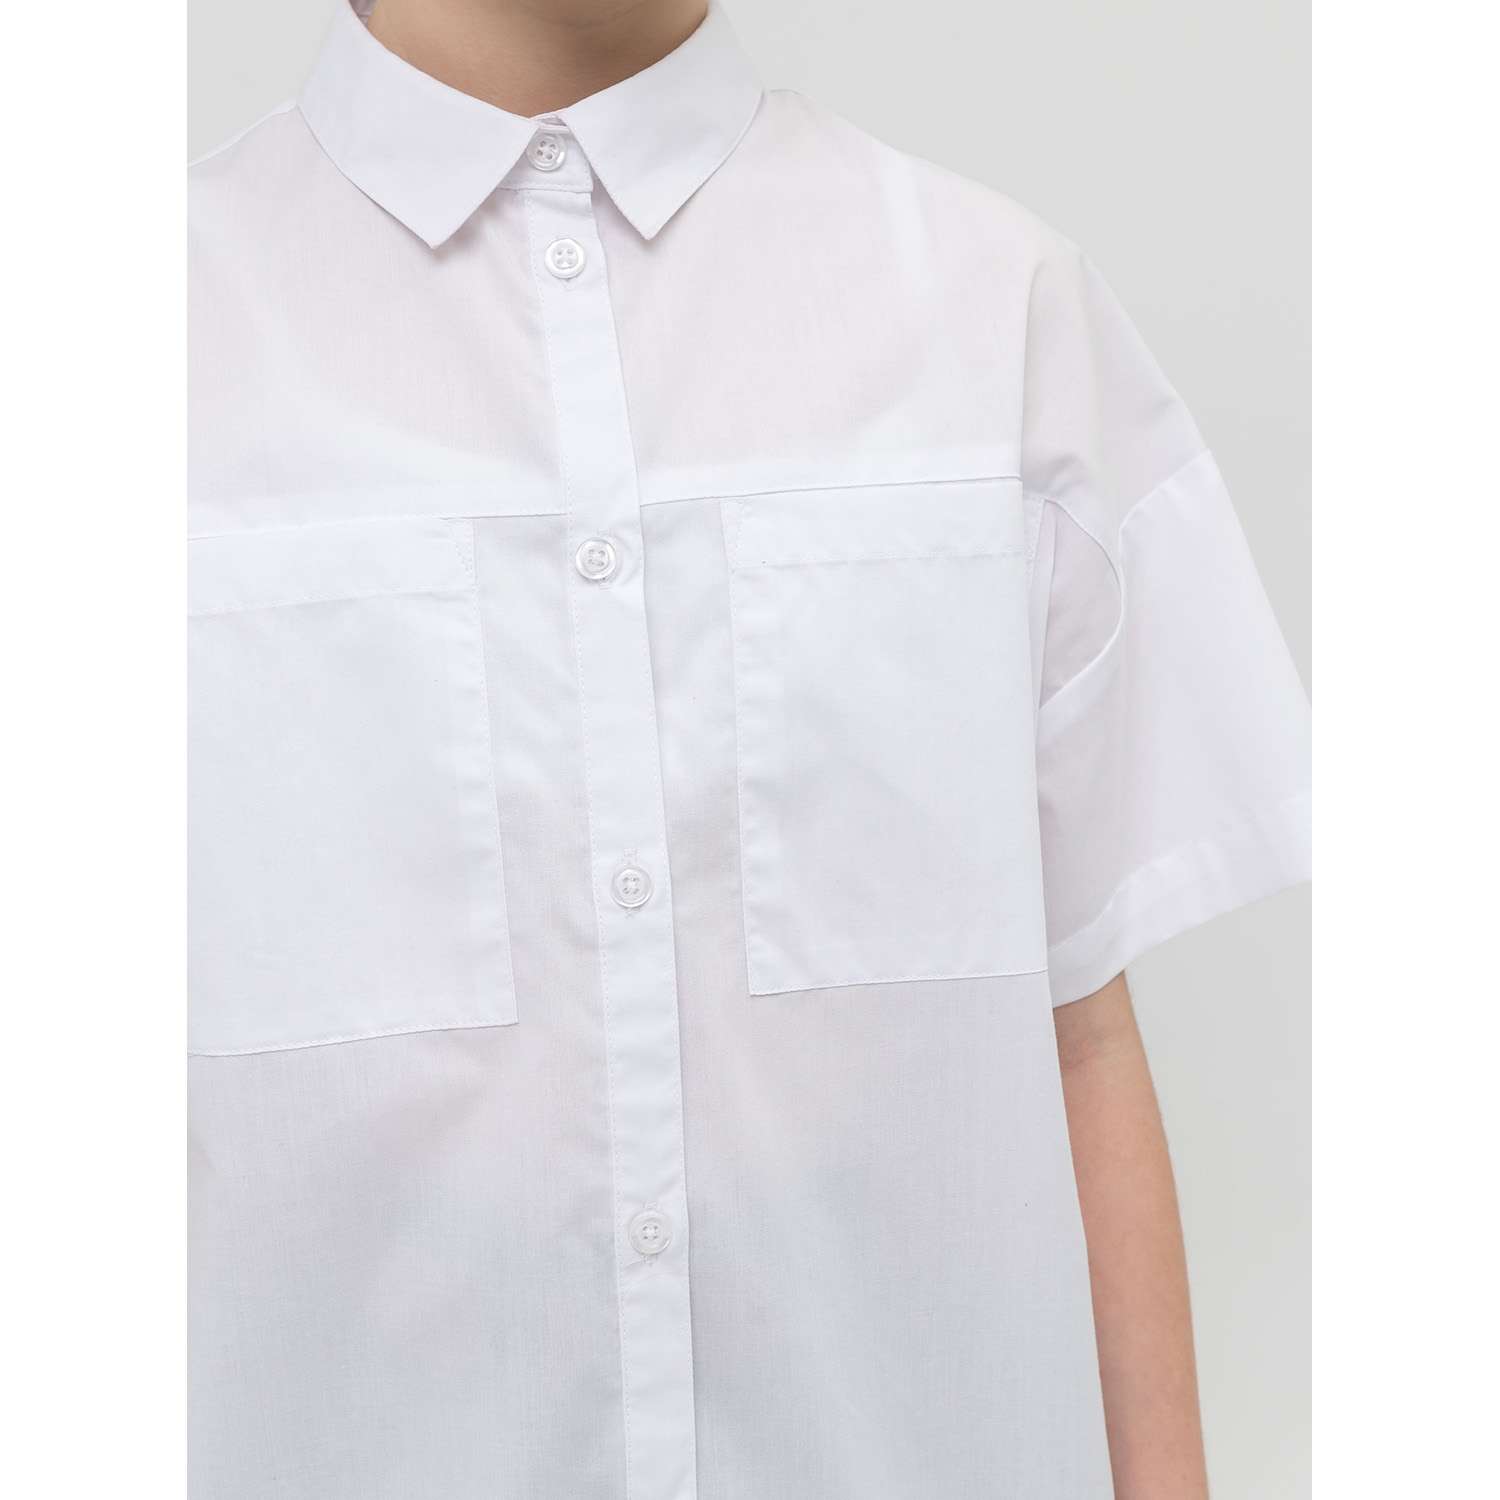 Рубашка PELICAN GWCT8119/Белый(2) - фото 2